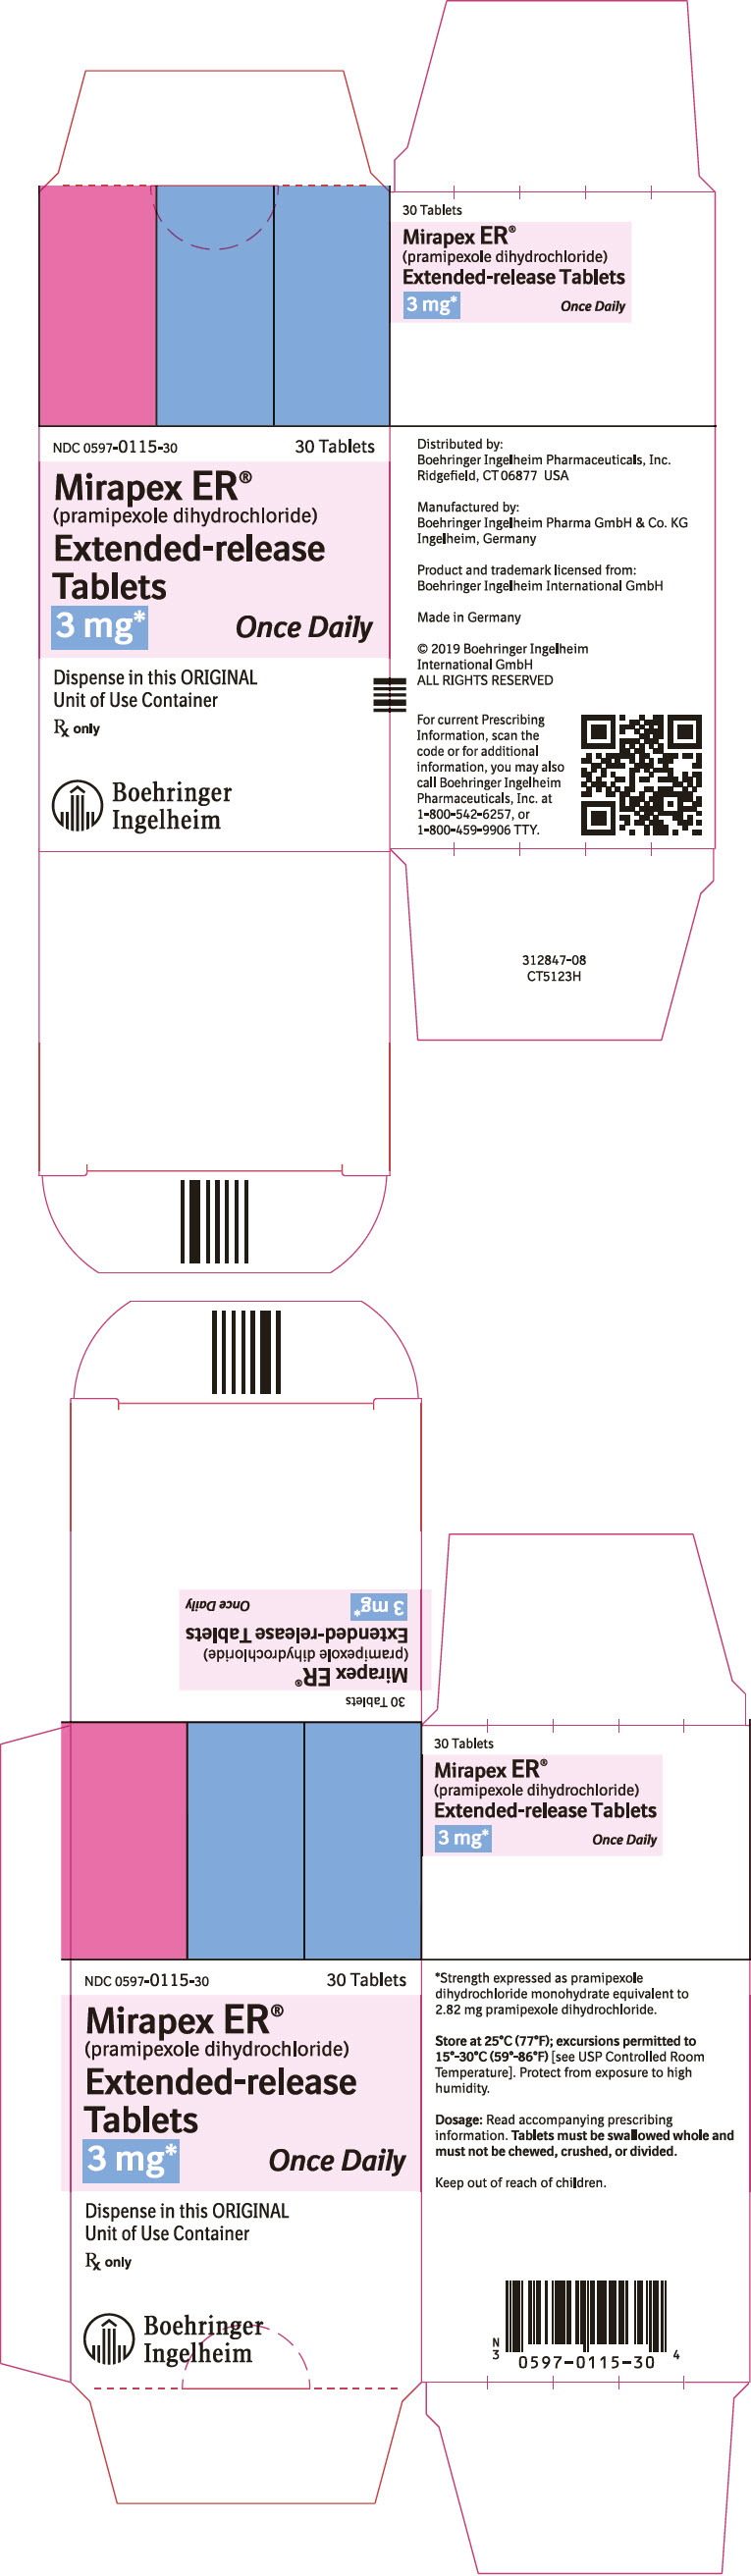 PRINCIPAL DISPLAY PANEL - 3 mg Tablet Bottle Carton